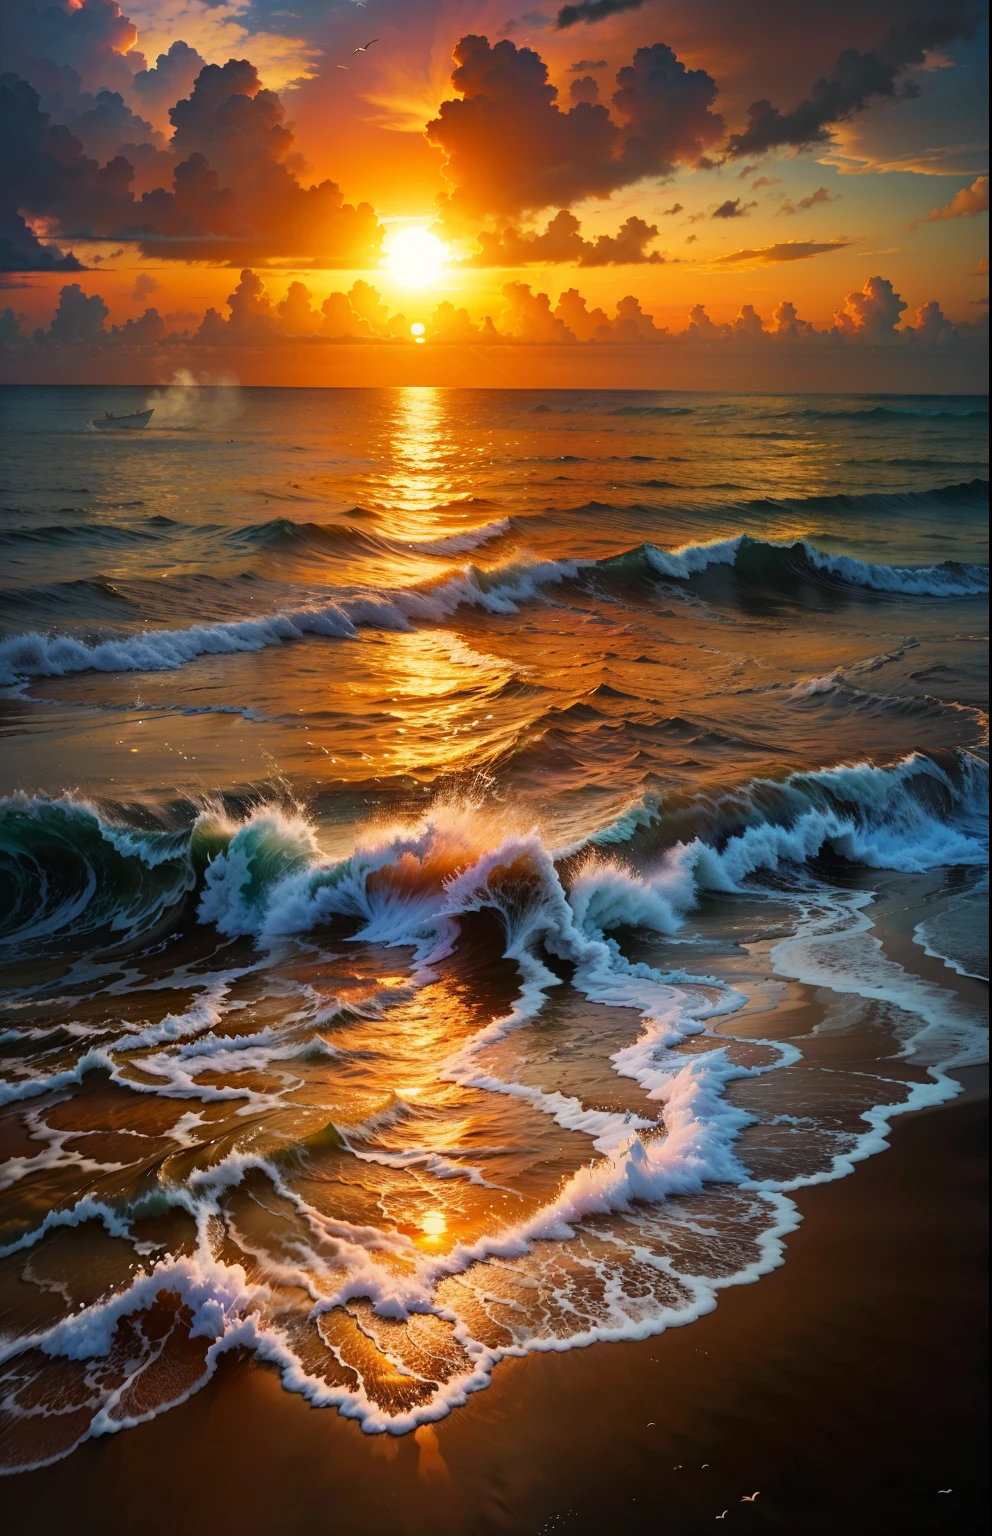 Un coucher de soleil absolument fascinant sur la plage, avec un mélange d&#39;oranges, roses, et les jaunes remplissent le ciel. Les eaux cristallines de la mer embrassant doucement le rivage, avec une plage de sable blanc qui s&#39;étend au loin. La scène est dynamique et époustouflante, avec des mouettes planant haut dans le ciel et des palmiers se balançant doucement. Imprégnez-vous de l&#39;atmosphère apaisante et laissez la paix vous envahir.